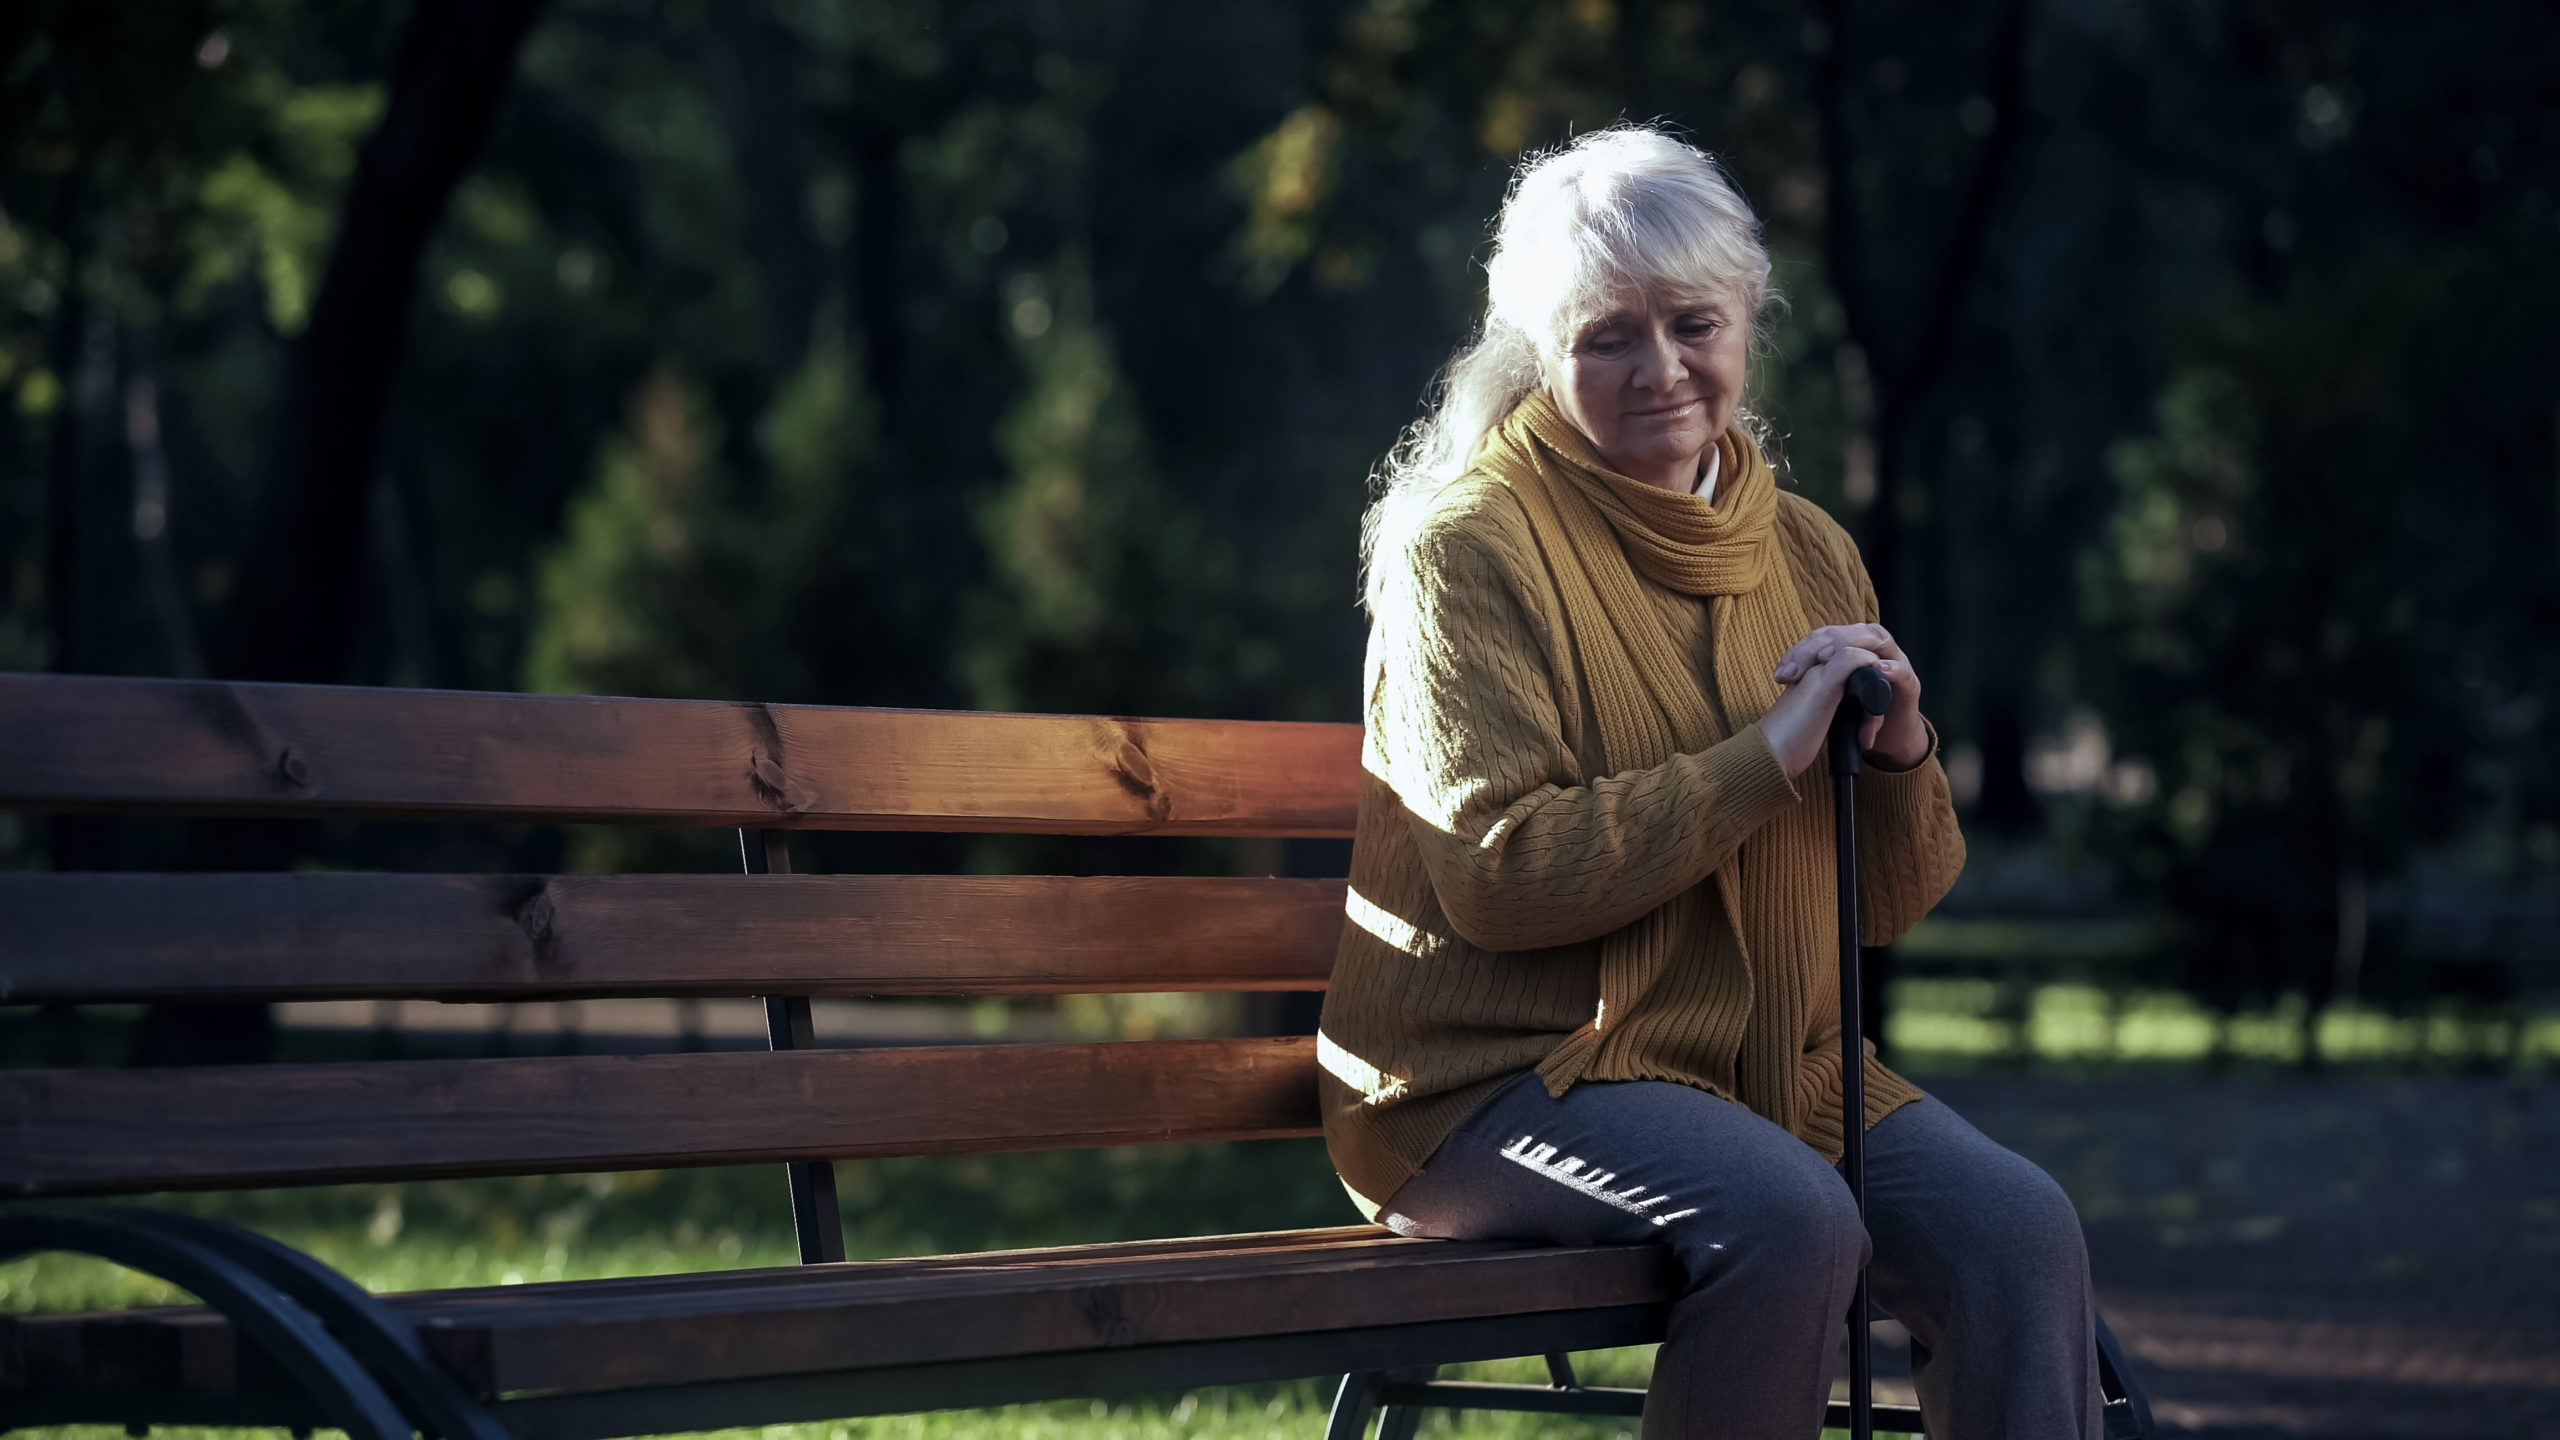 Нашлась пожилая женщина. Пожилая женщина на скамейке в парке. Одинокая пожилая женщина. Старушка на скамейке. Одинокаяпожила женщина.